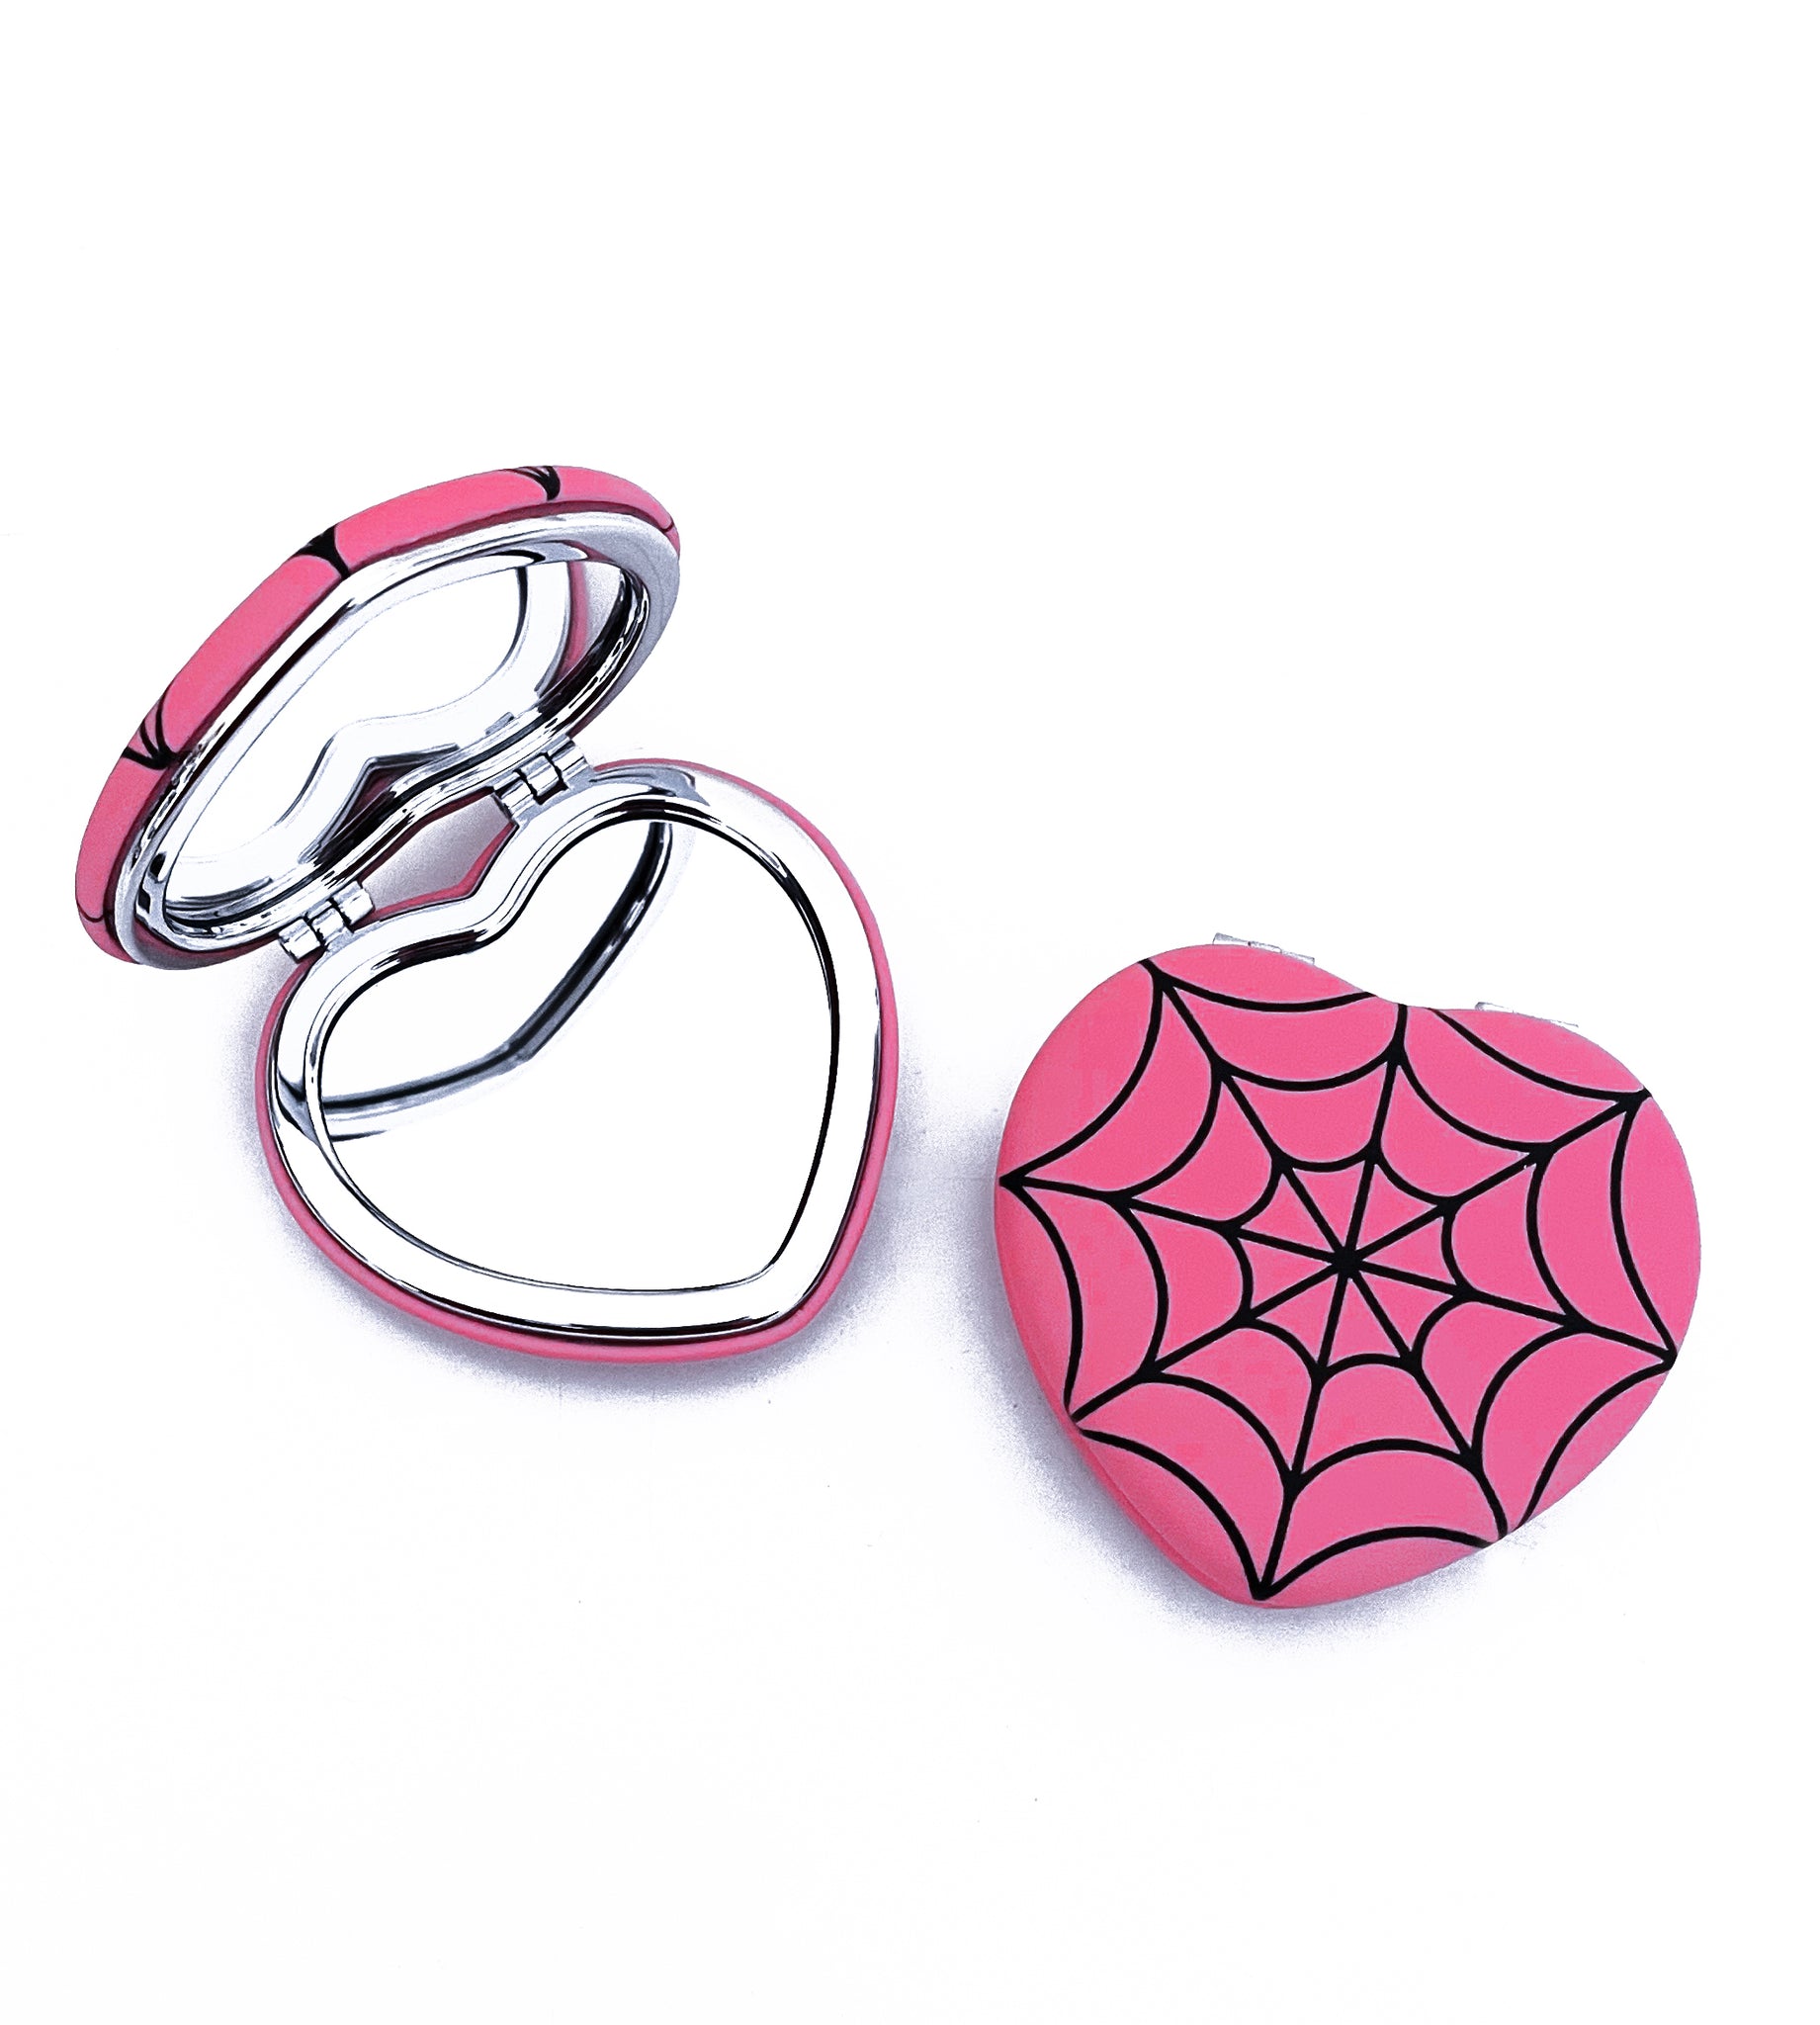 Pink Spiderweb Heart Pocket Mirror